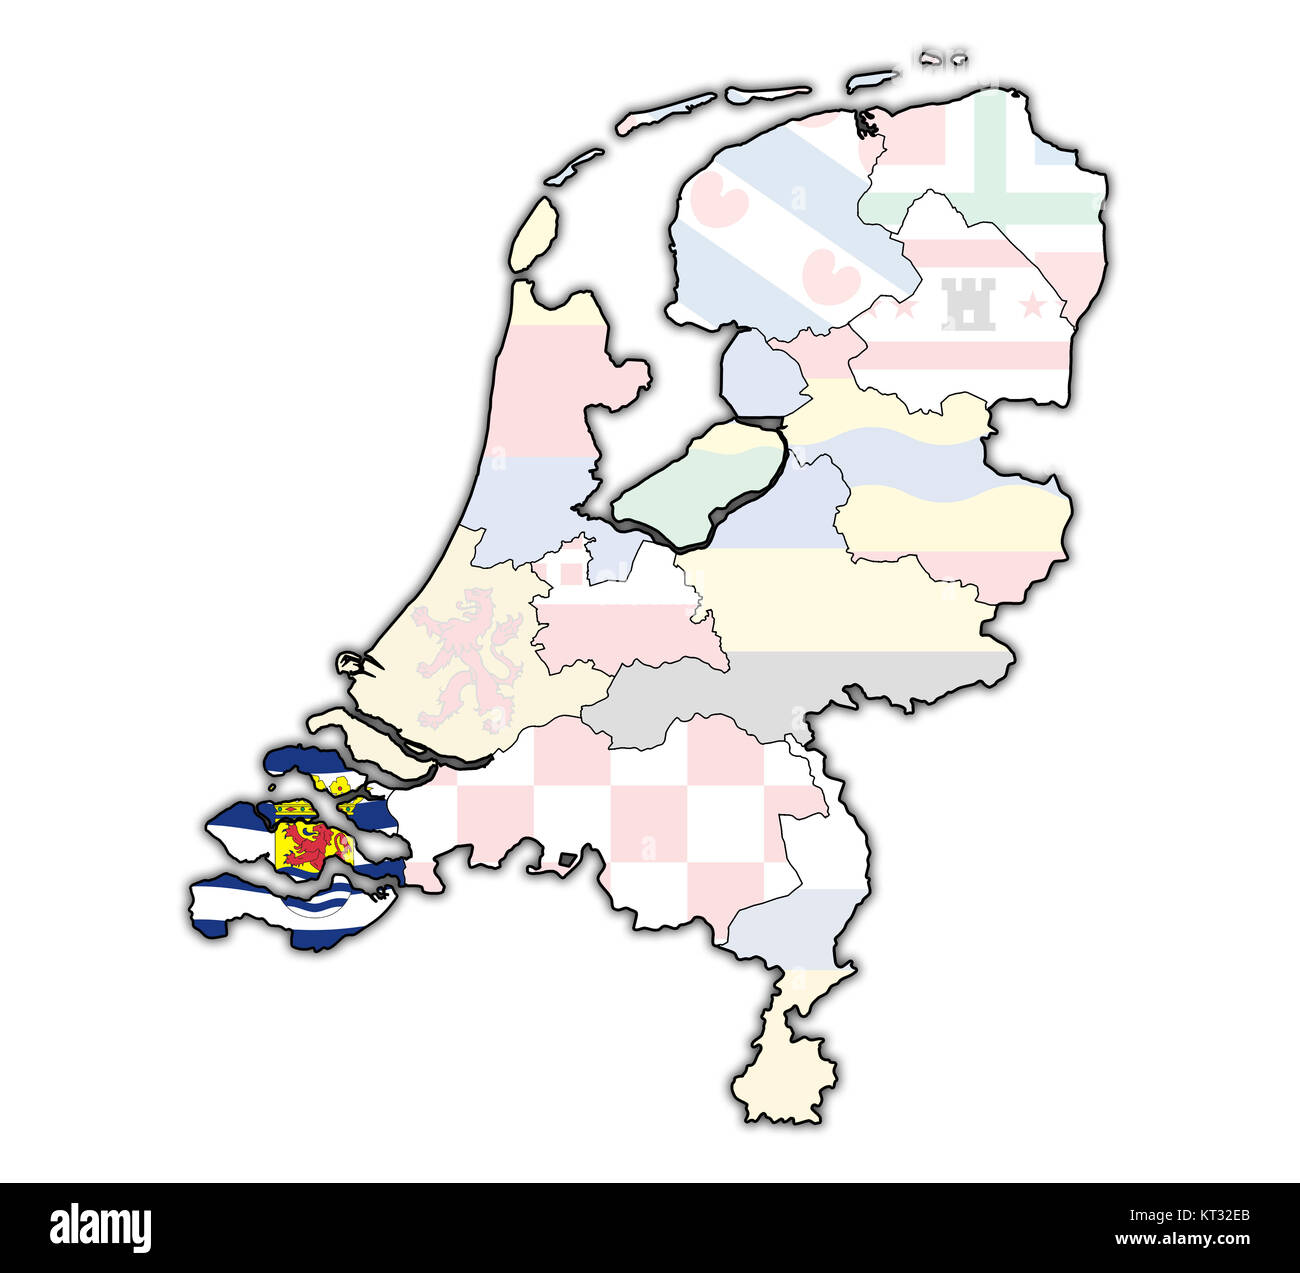 Zeeland auf der Karte von Provinzen der Niederlande Stockfoto